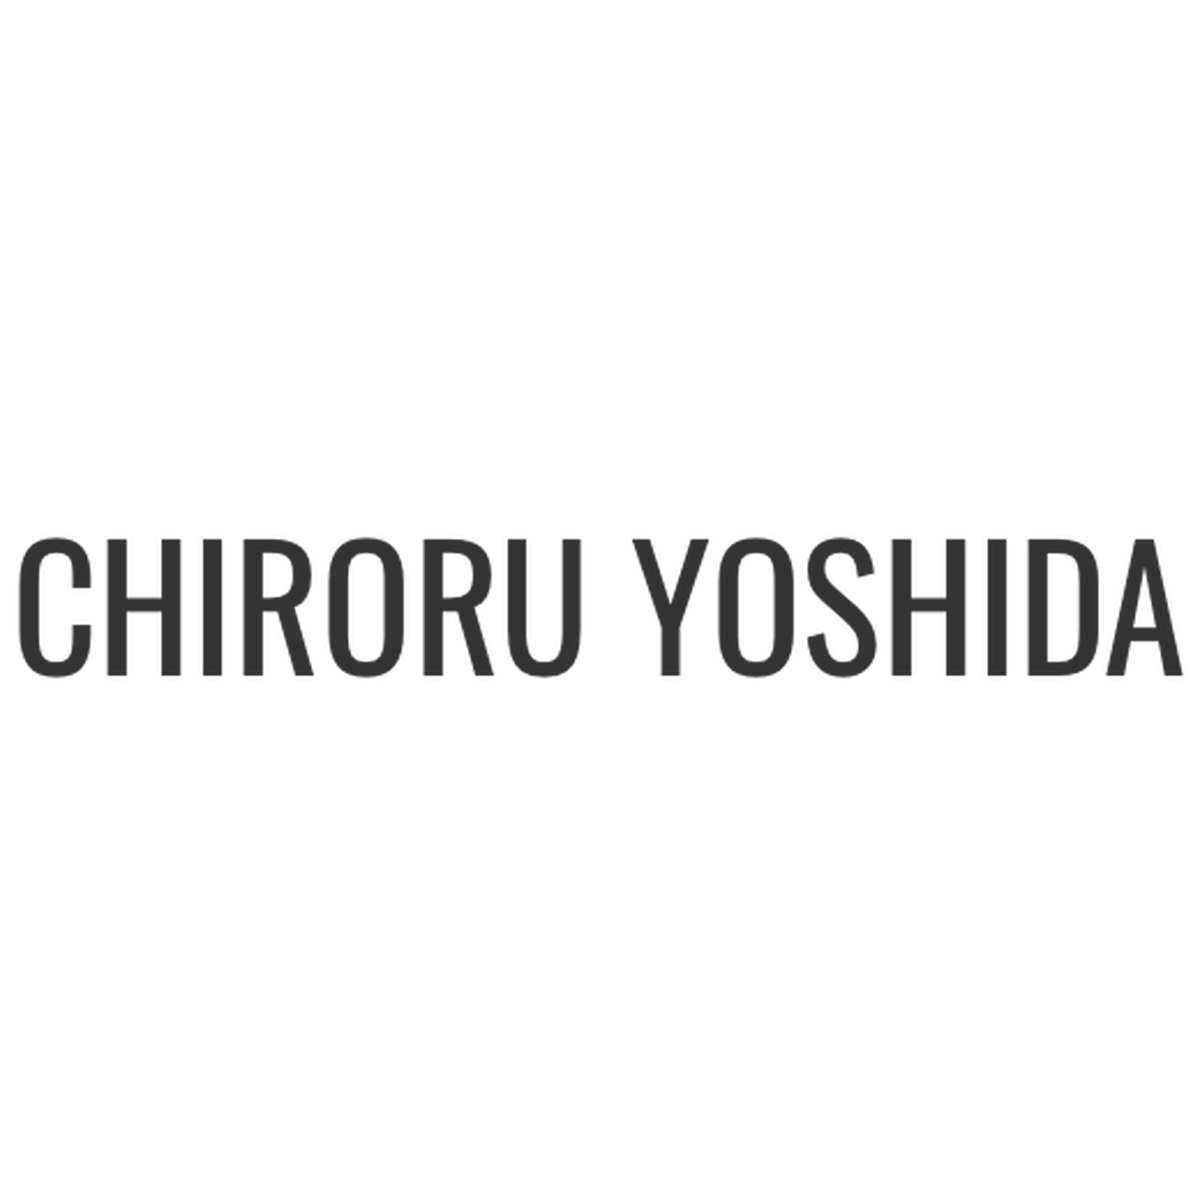 Chiroru Yoshida